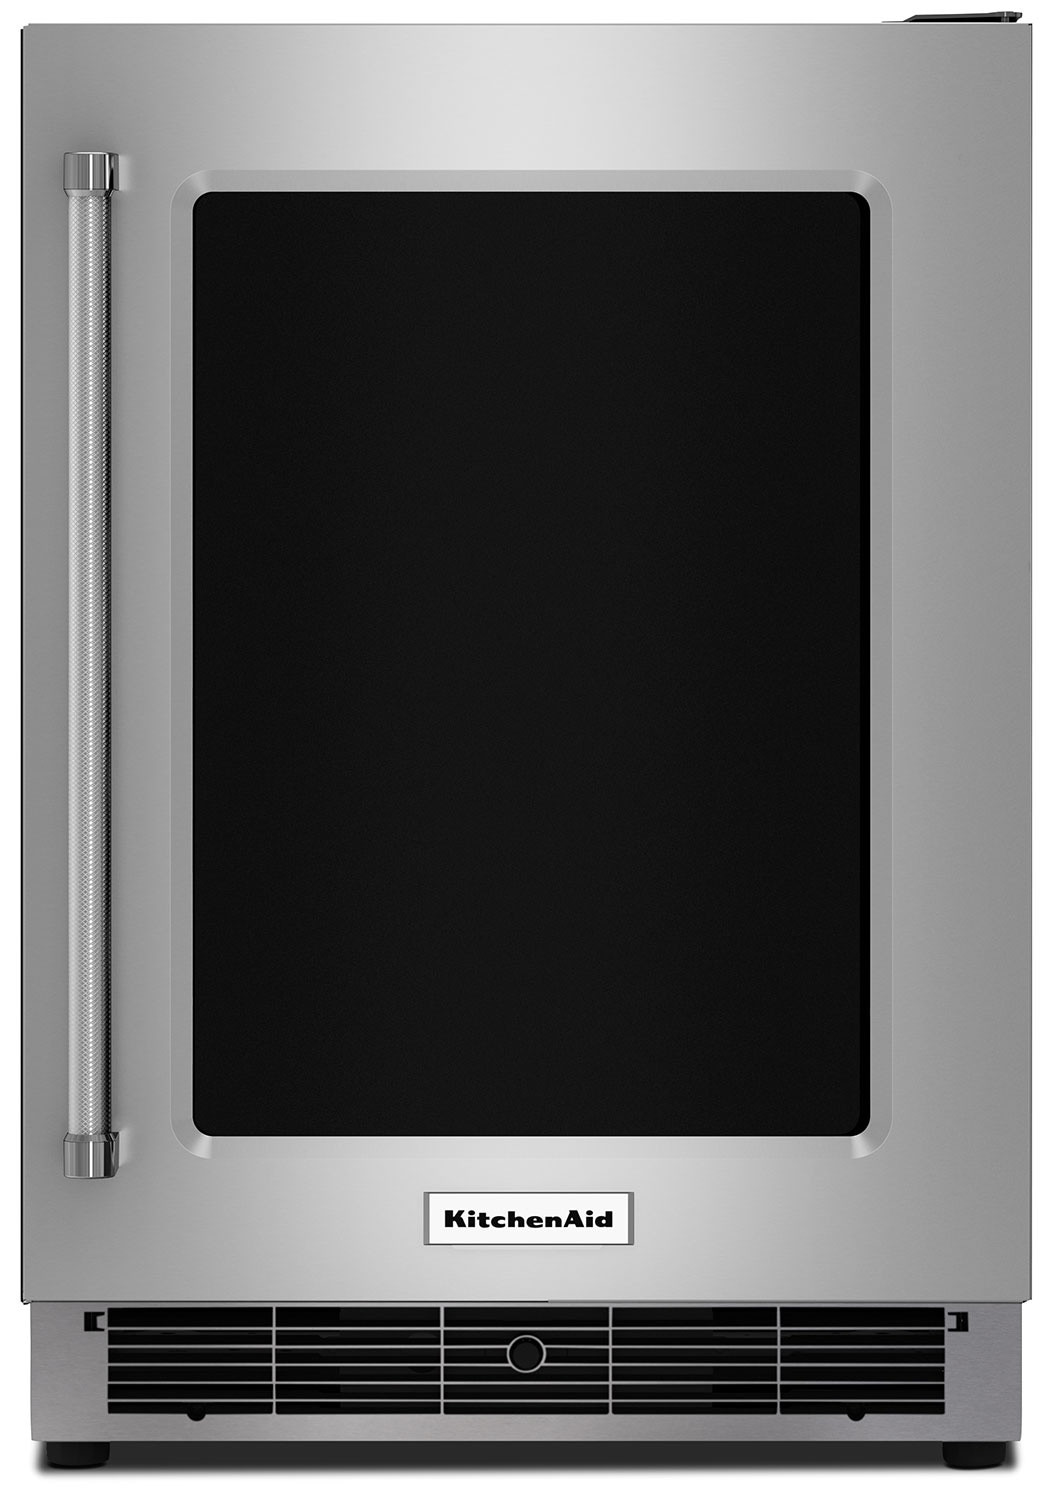 Kitchen Aid Under Counter Refrigerator
 KitchenAid 5 1 Cu Ft Undercounter Refrigerator with